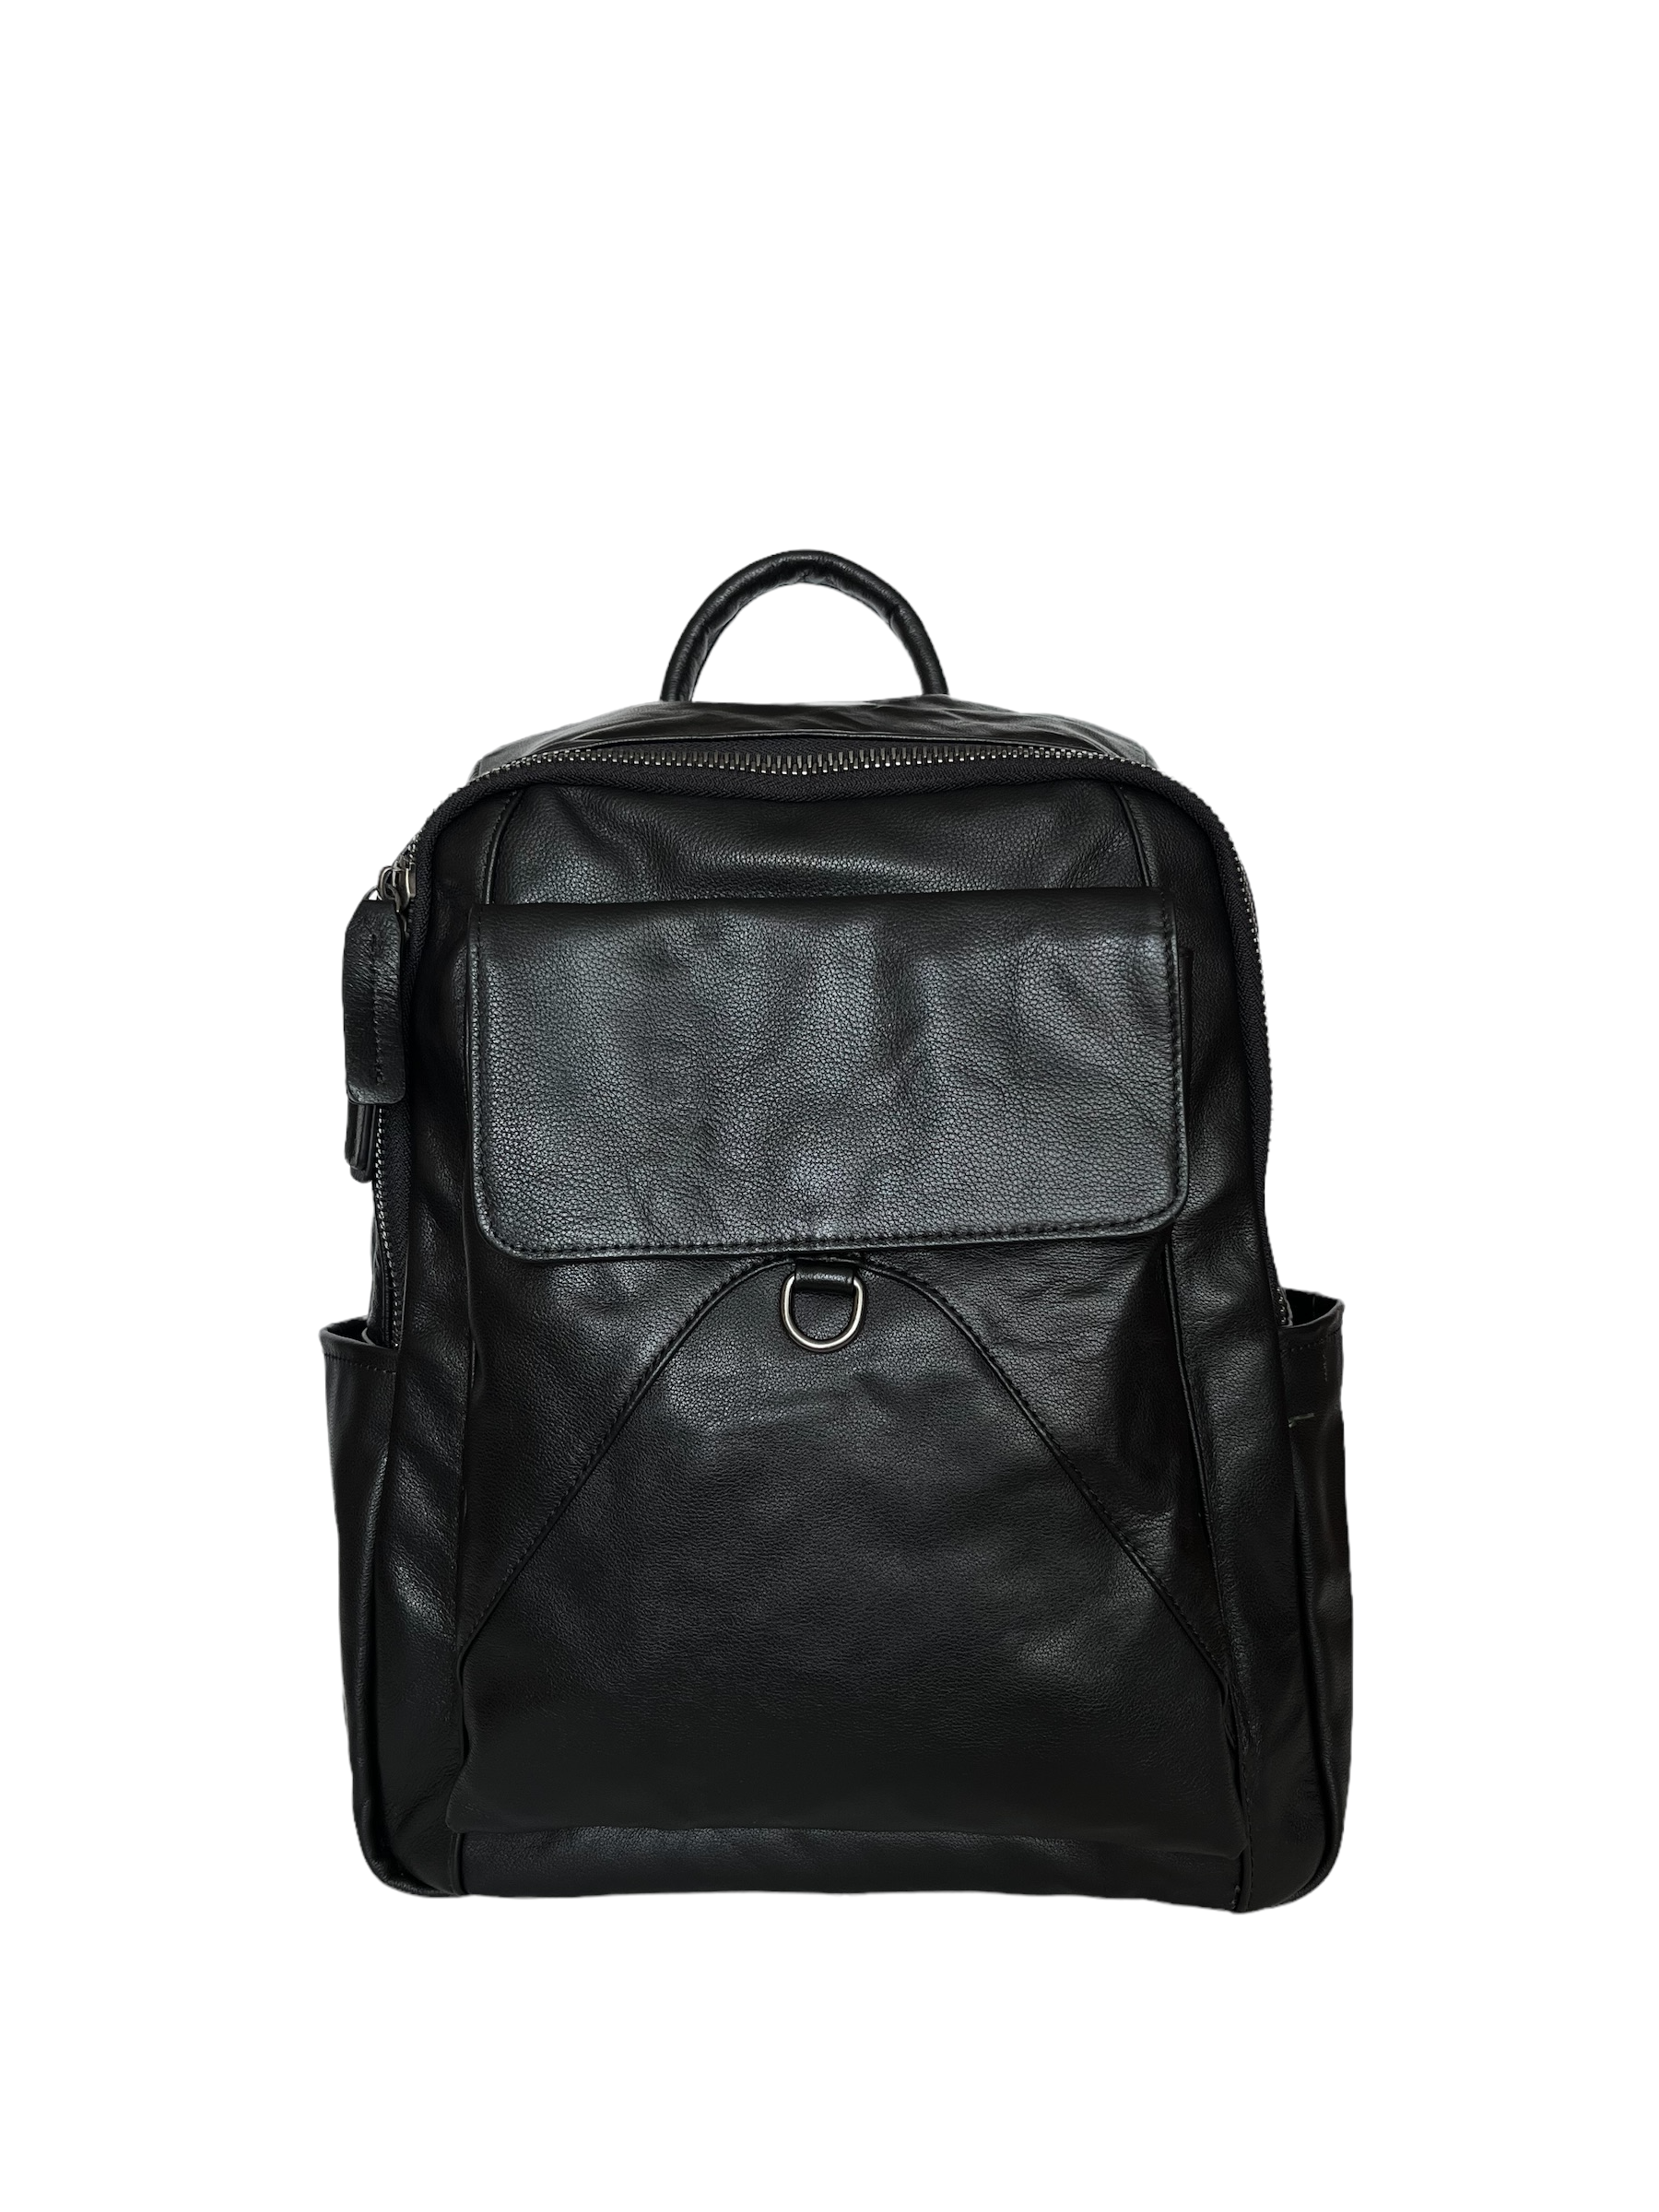 Рюкзак BRUONO STN-9157 черный, 38x27x15 см